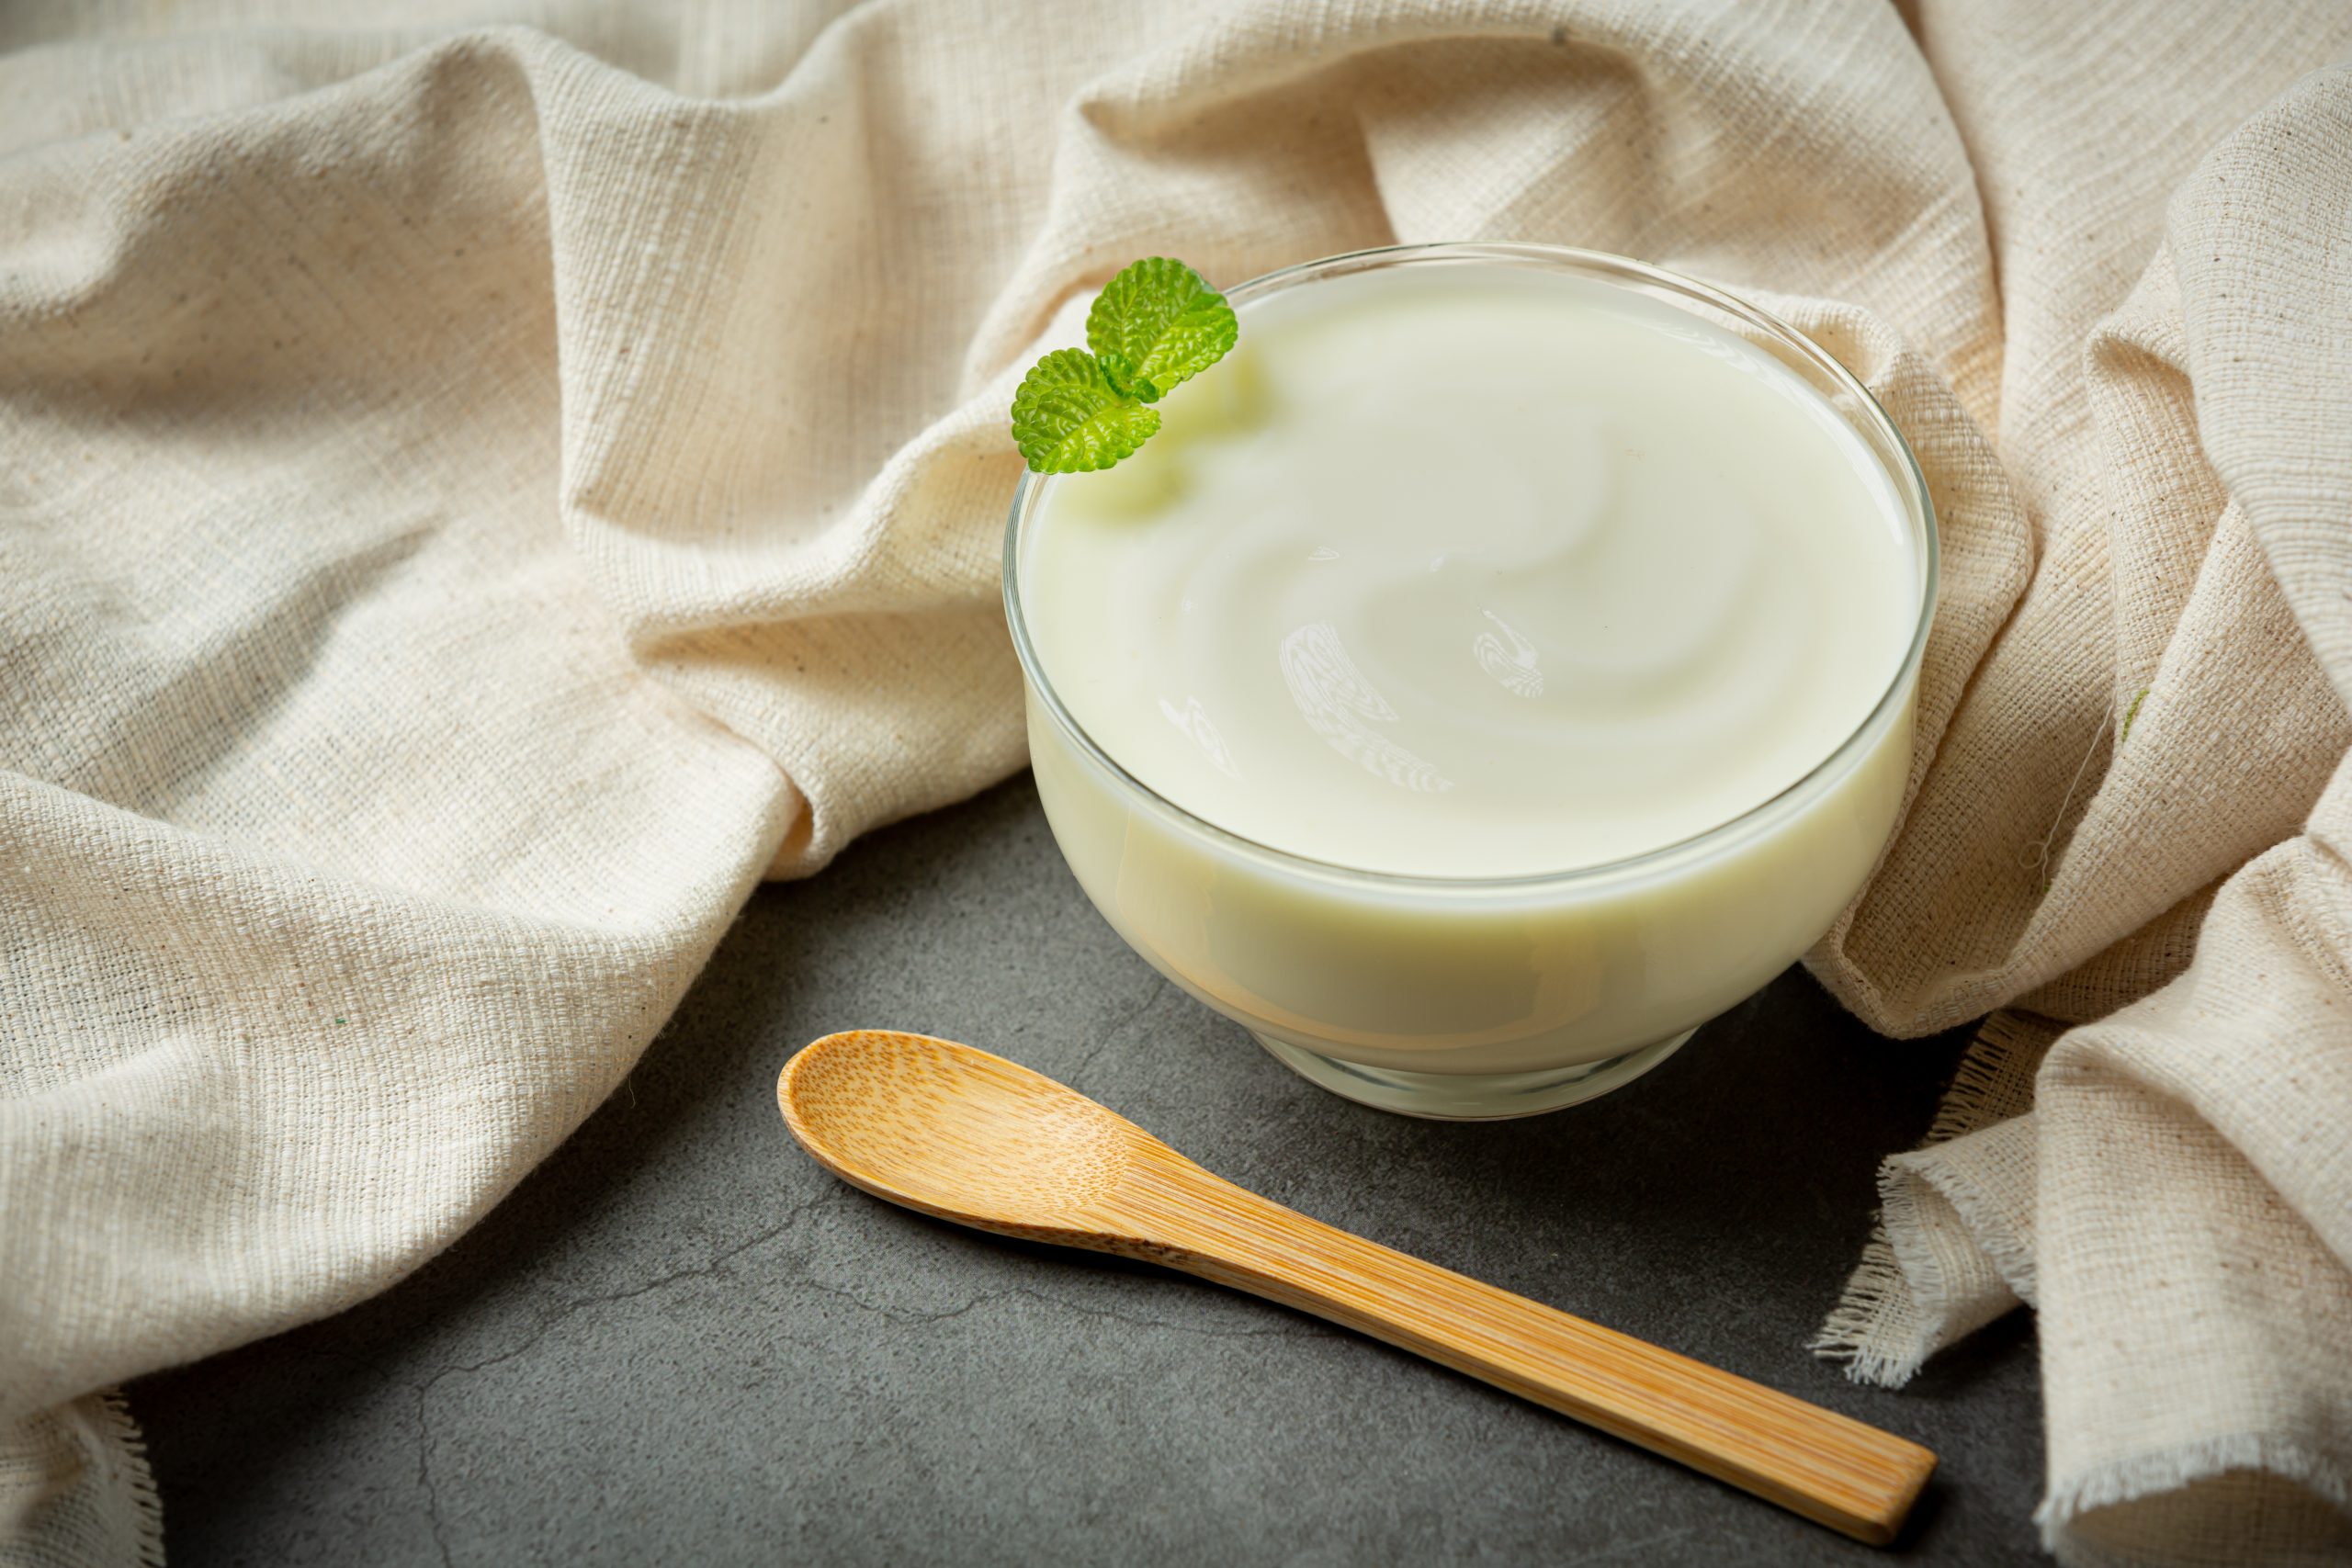 Un yogurt al día podría reducir la presión arterial | yogurt griego / alimentos procesados